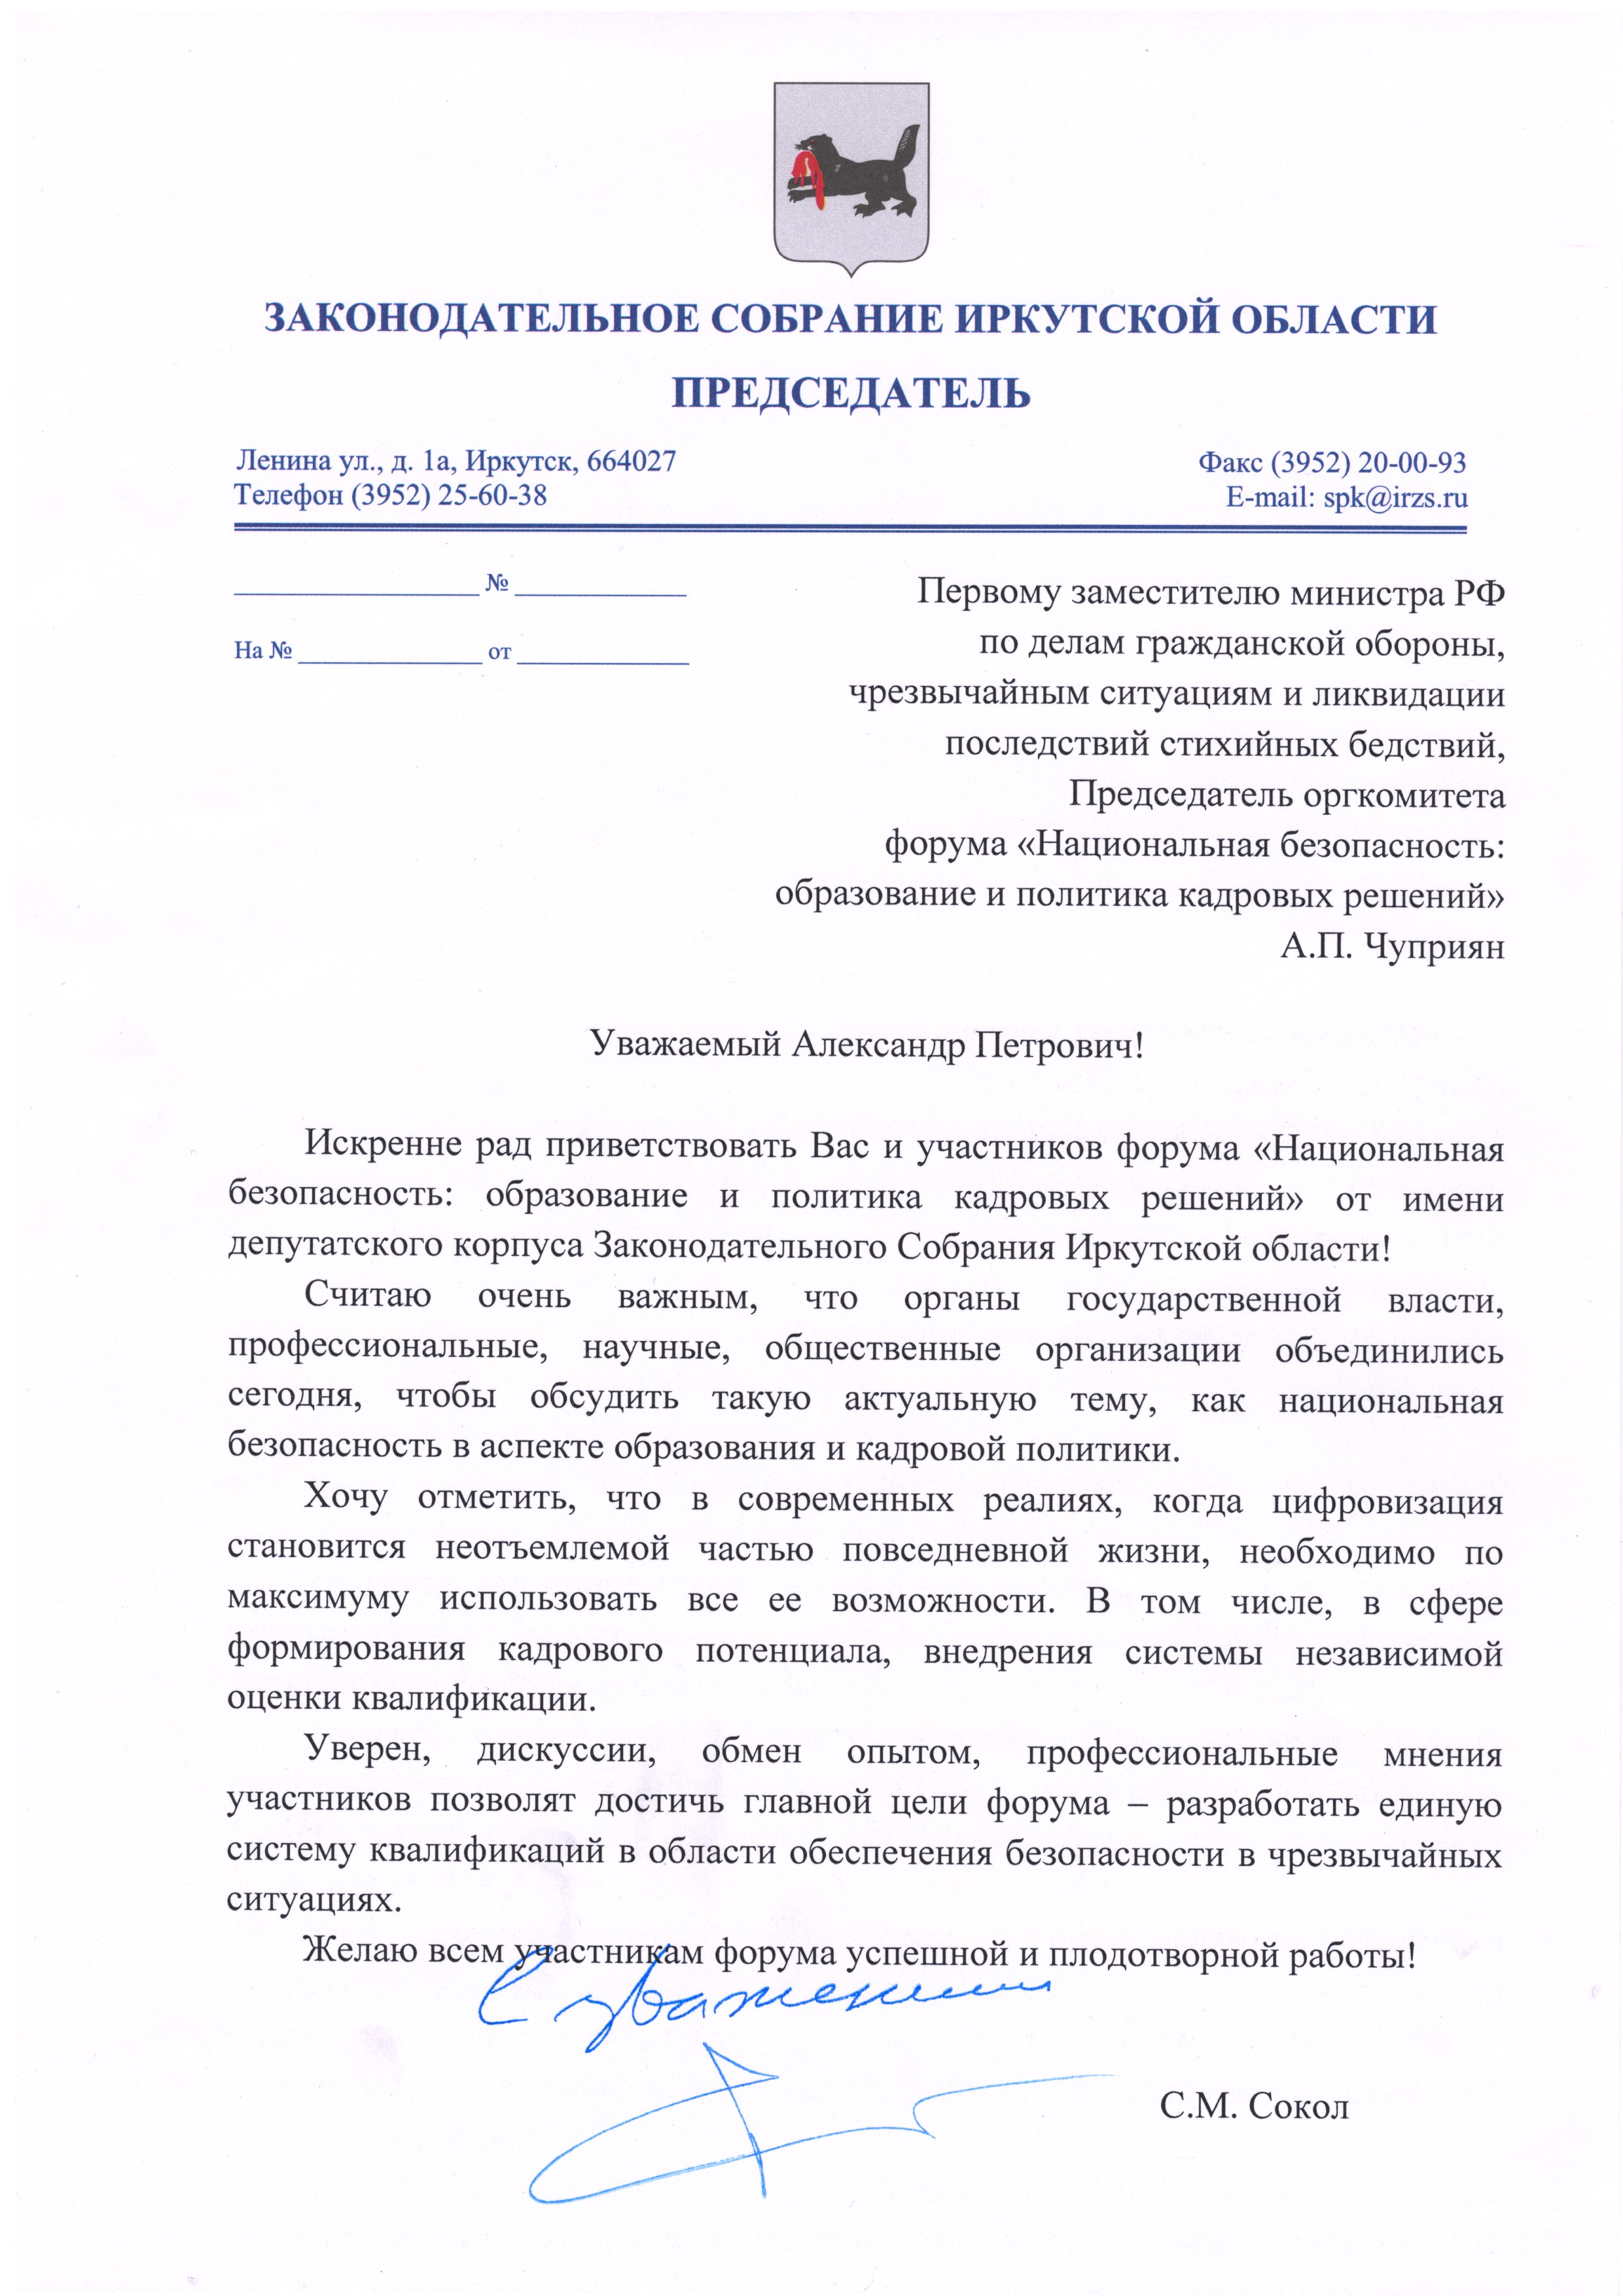 Приветственный адрес председателя законодательного собрания Иркутской области